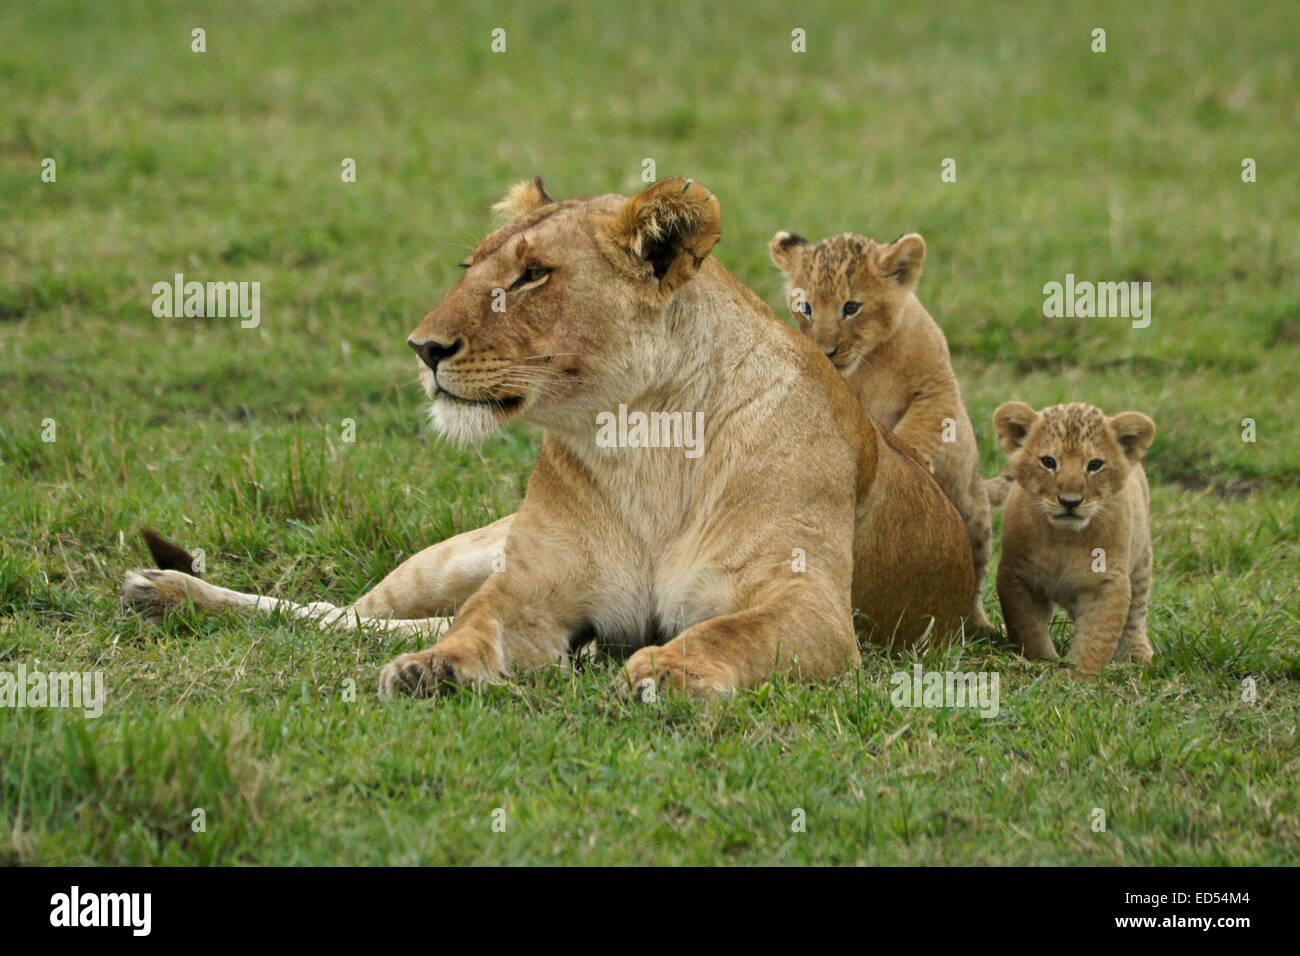 Lioness with tiny cubs, Masai Mara, Kenya Stock Photo